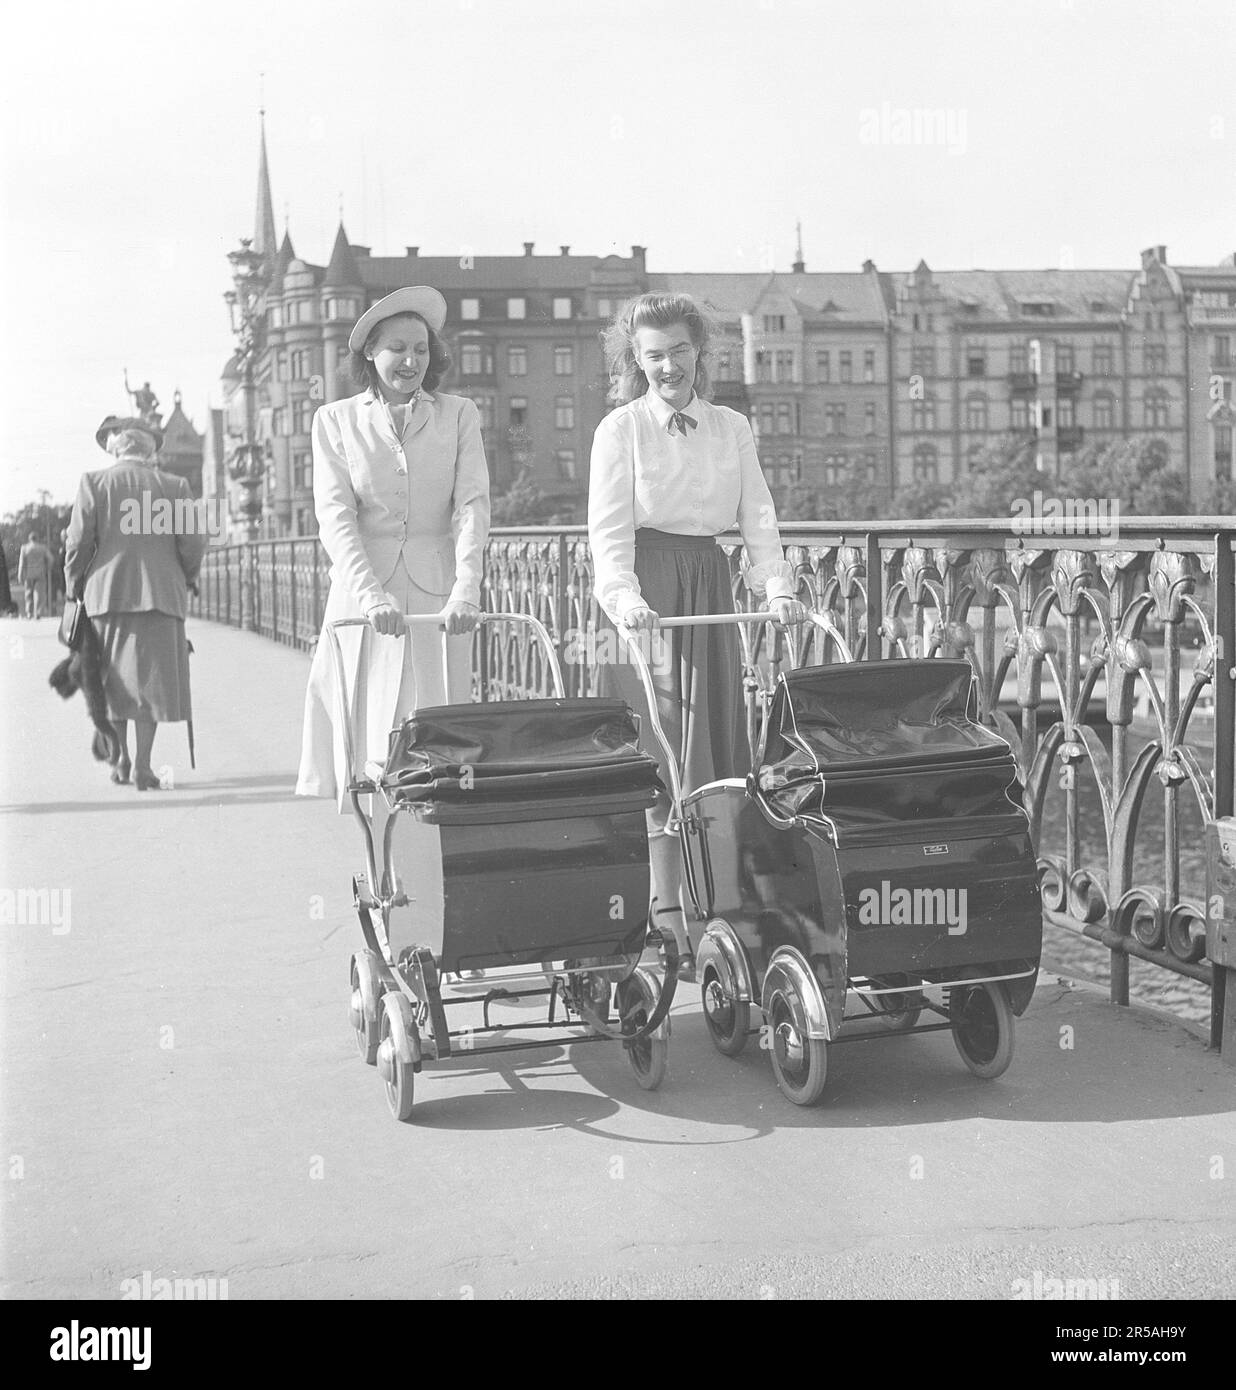 Für einen Spaziergang in den 1950er. Zwei Frauen laufen draußen und schieben Kinderwagen vor sich, überqueren die Brücke nach Djurgården Stockholm. Schweden 1950. Kristoffersson Ref. AX39-1 Stockfoto